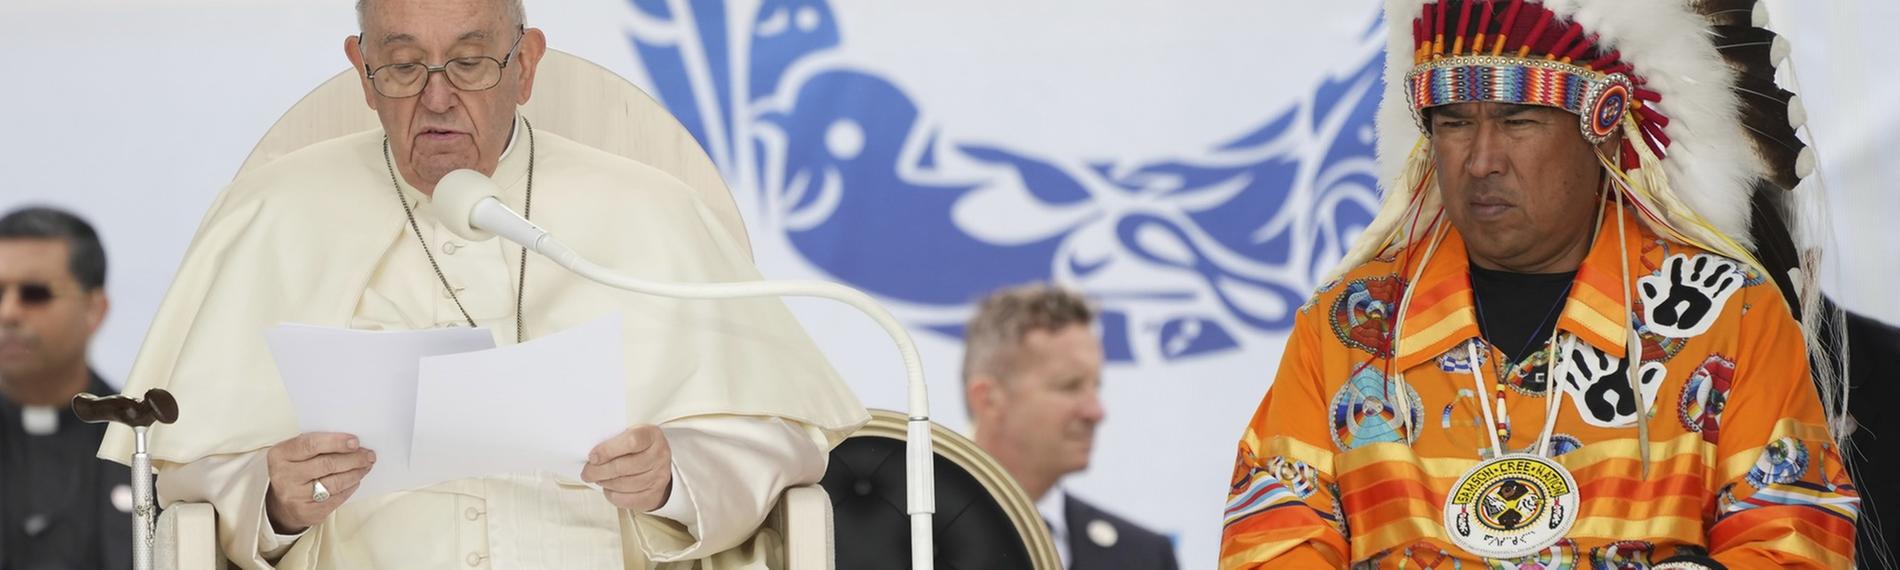 Papst entschuldigt sich bei indogenen Völkern